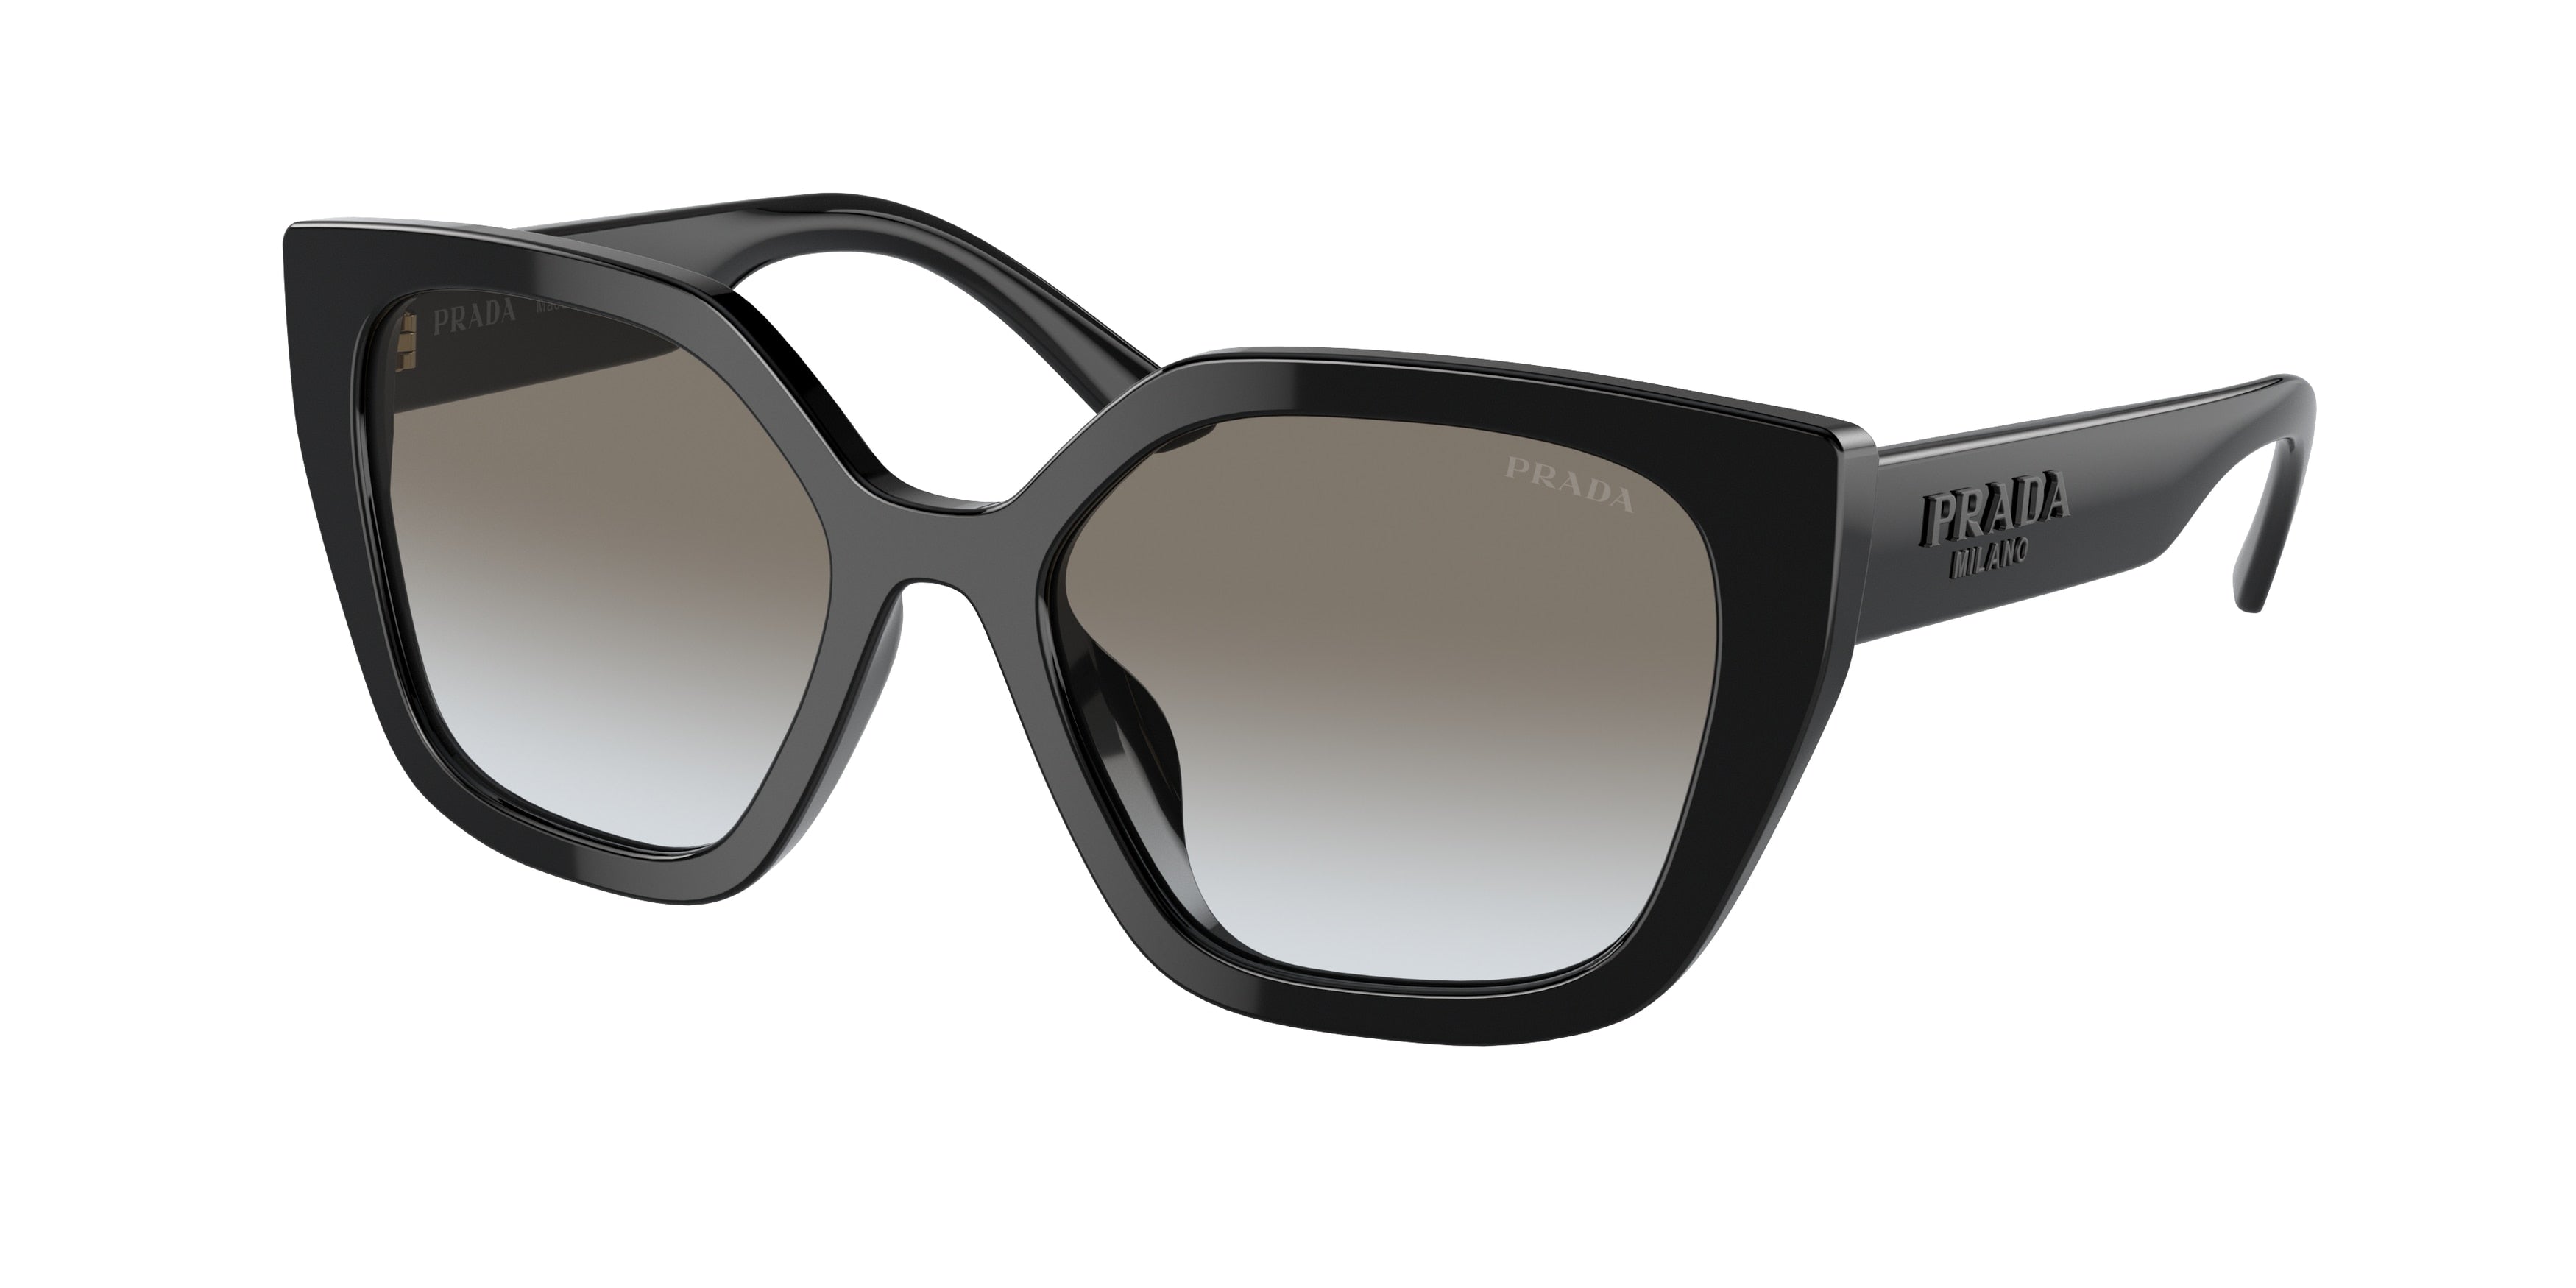 Prada PR24XS Rectangle Sunglasses  1AB0A7-Black 52-140-18 - Color Map Black